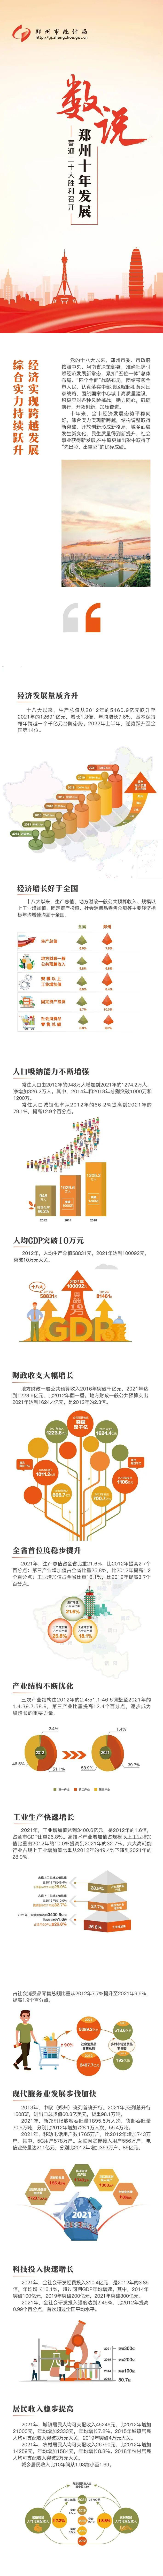 数说郑州十年发展——人均GDP突破10万元